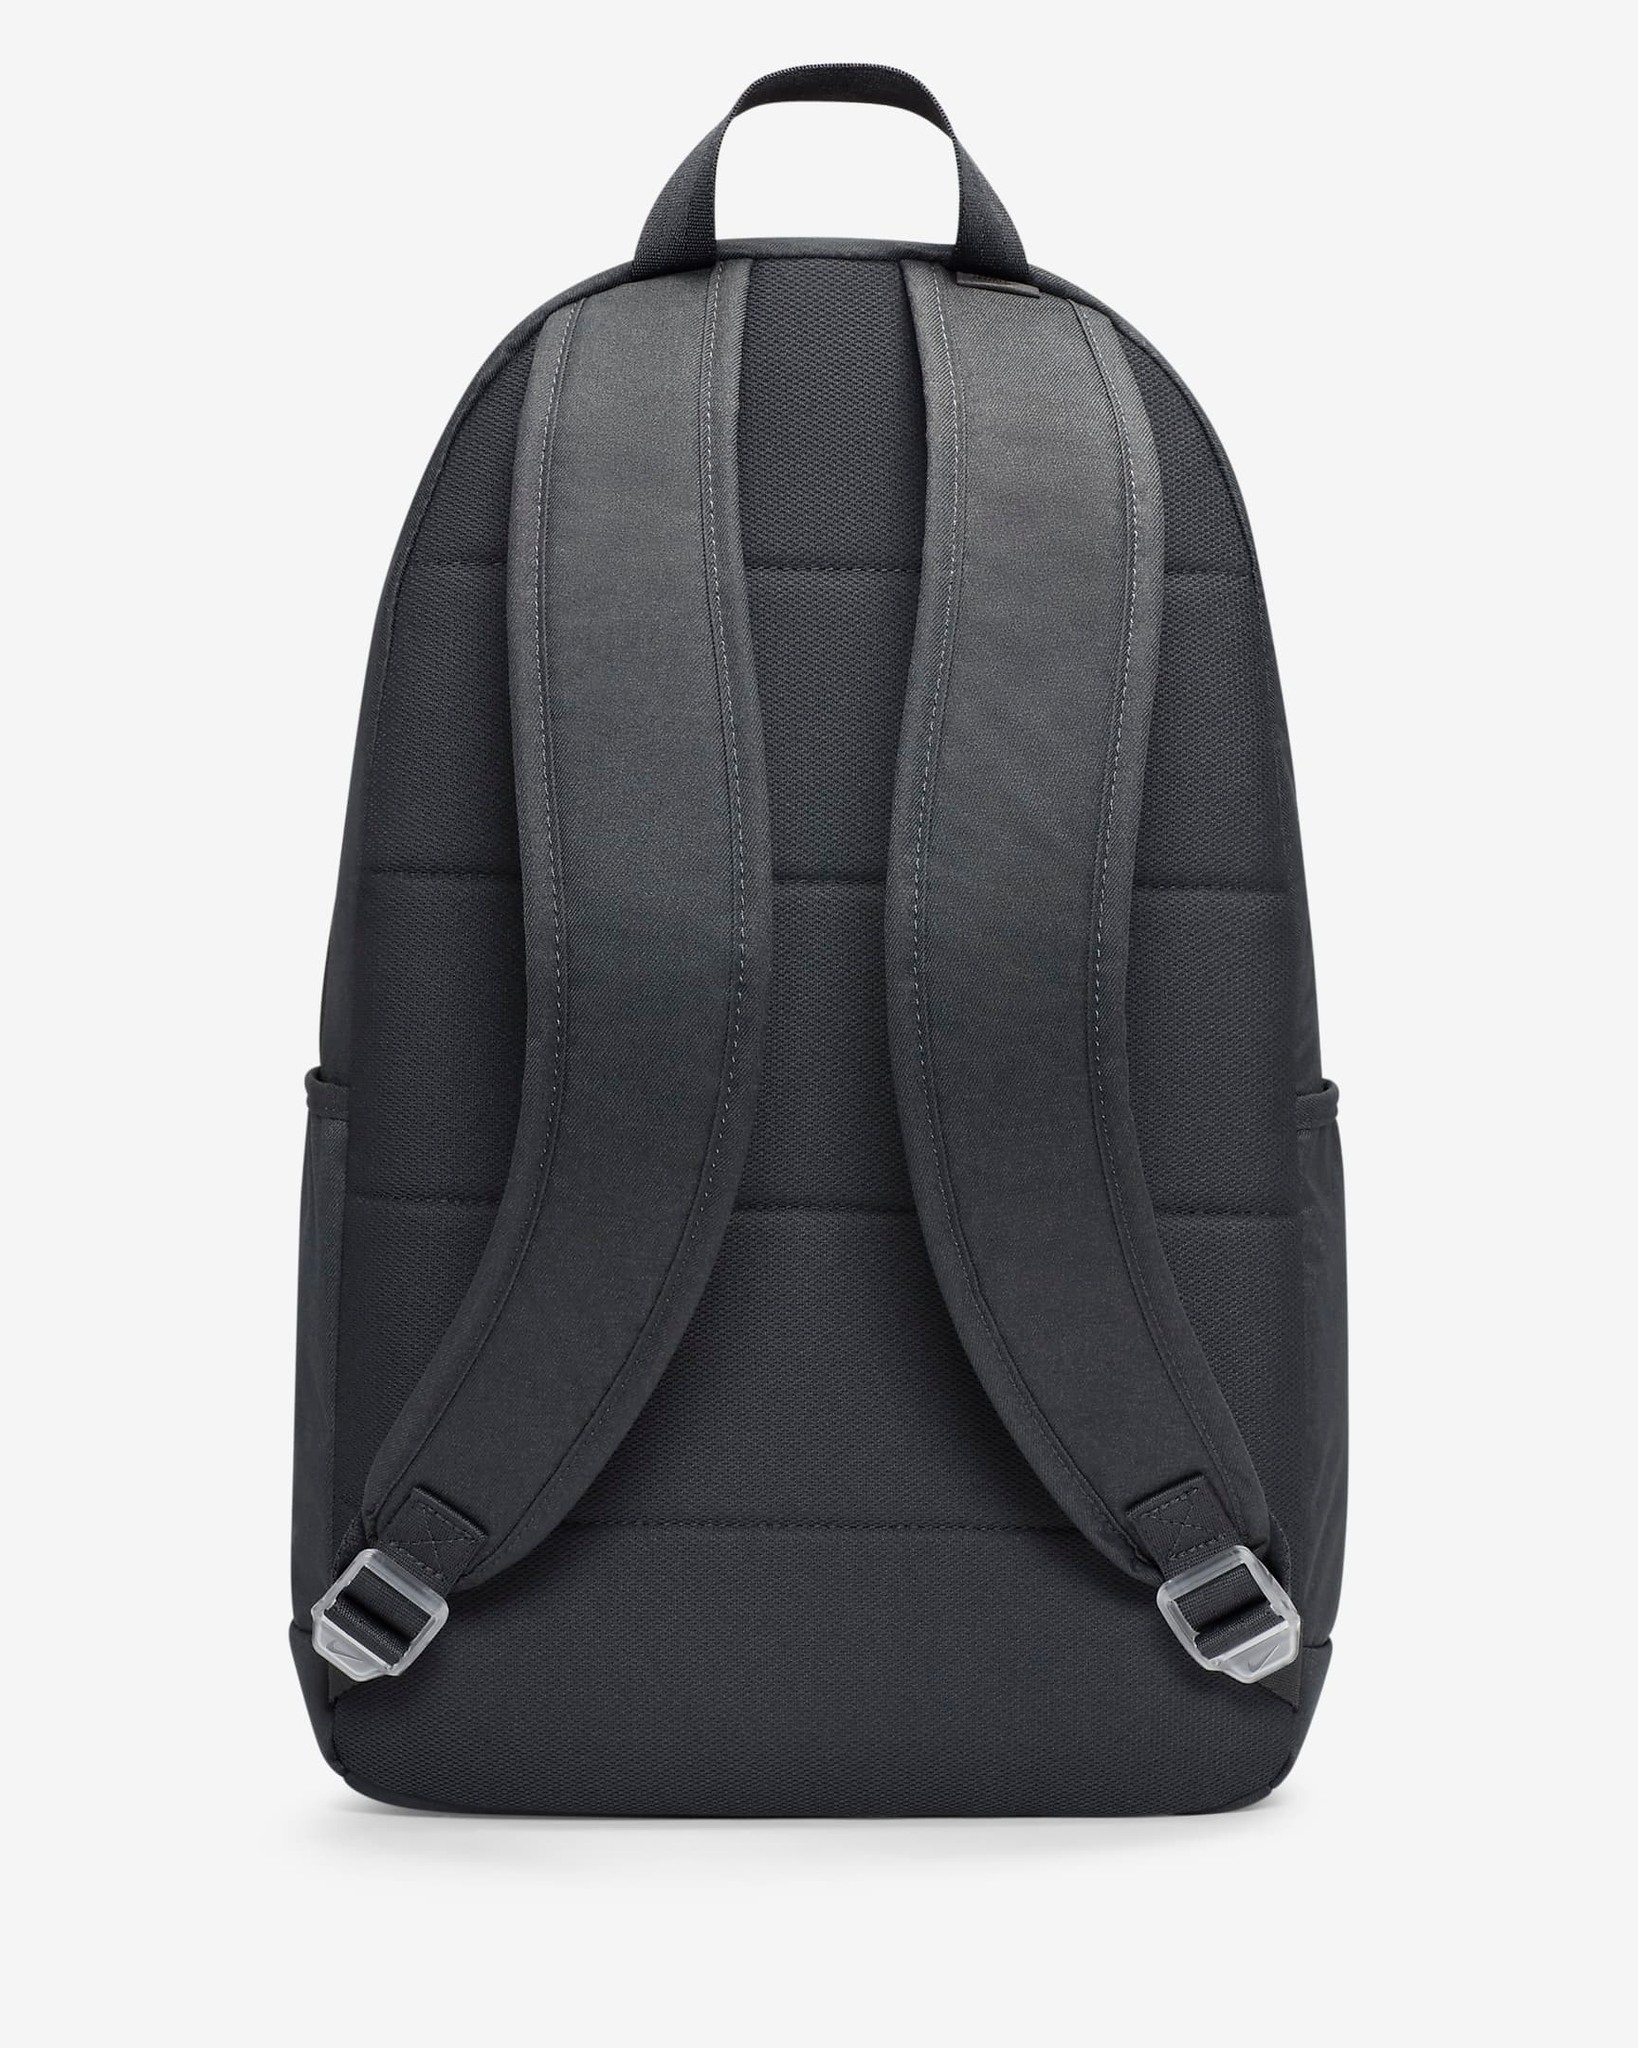 PHỤ KIỆN CHÍNH HÃNG - Balo Nike Premium Backpack (21L) - DQ5763-070